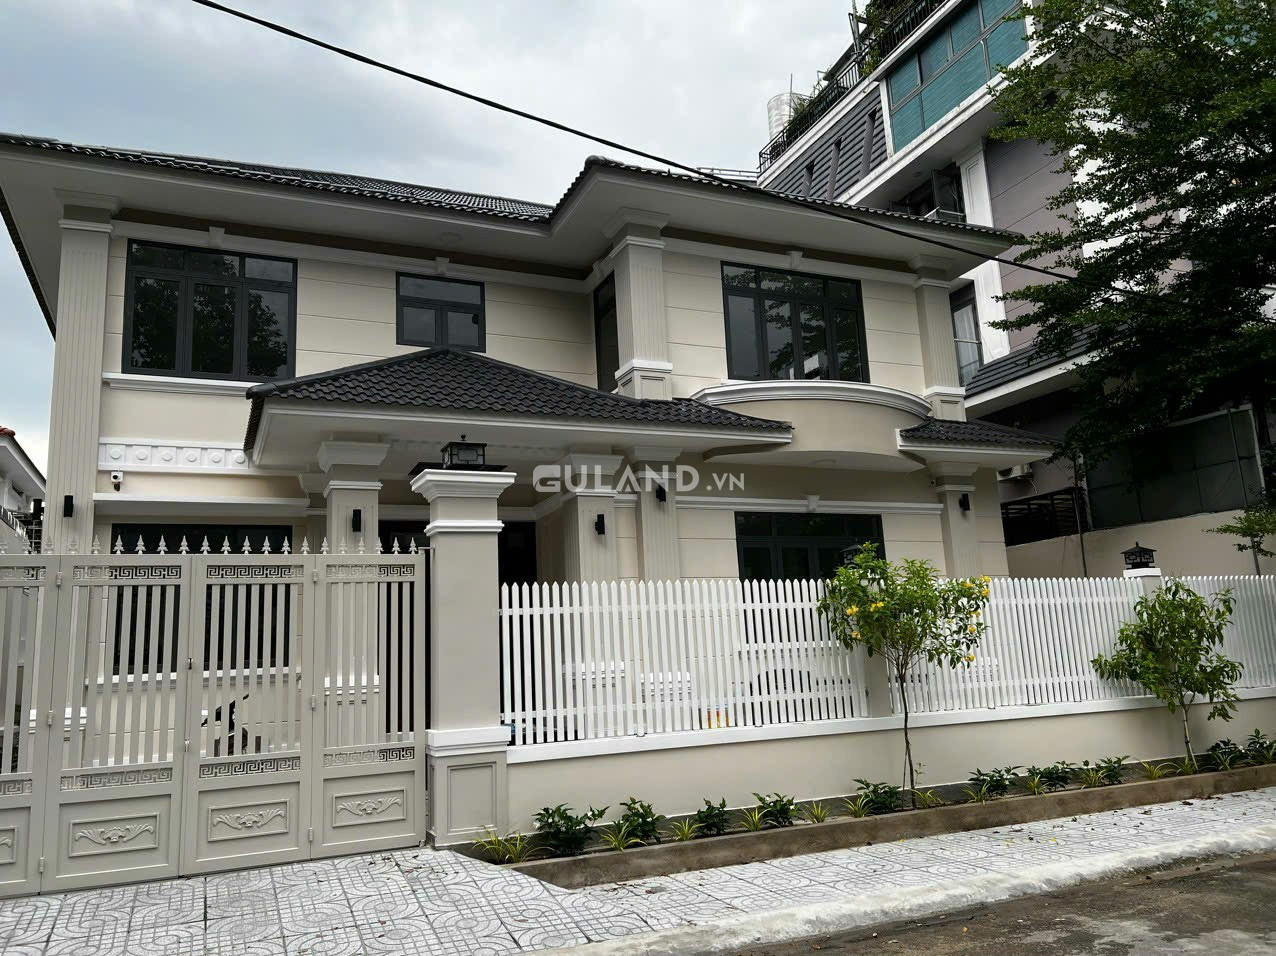 BDS HVL Cho thuê, Biệt thự đường 17 xây mới kiến trúc kiểu Thái sang trọng, ngay sát GiGamall, P. Hiệp Bình Chánh TP Thủ Đức HCM.